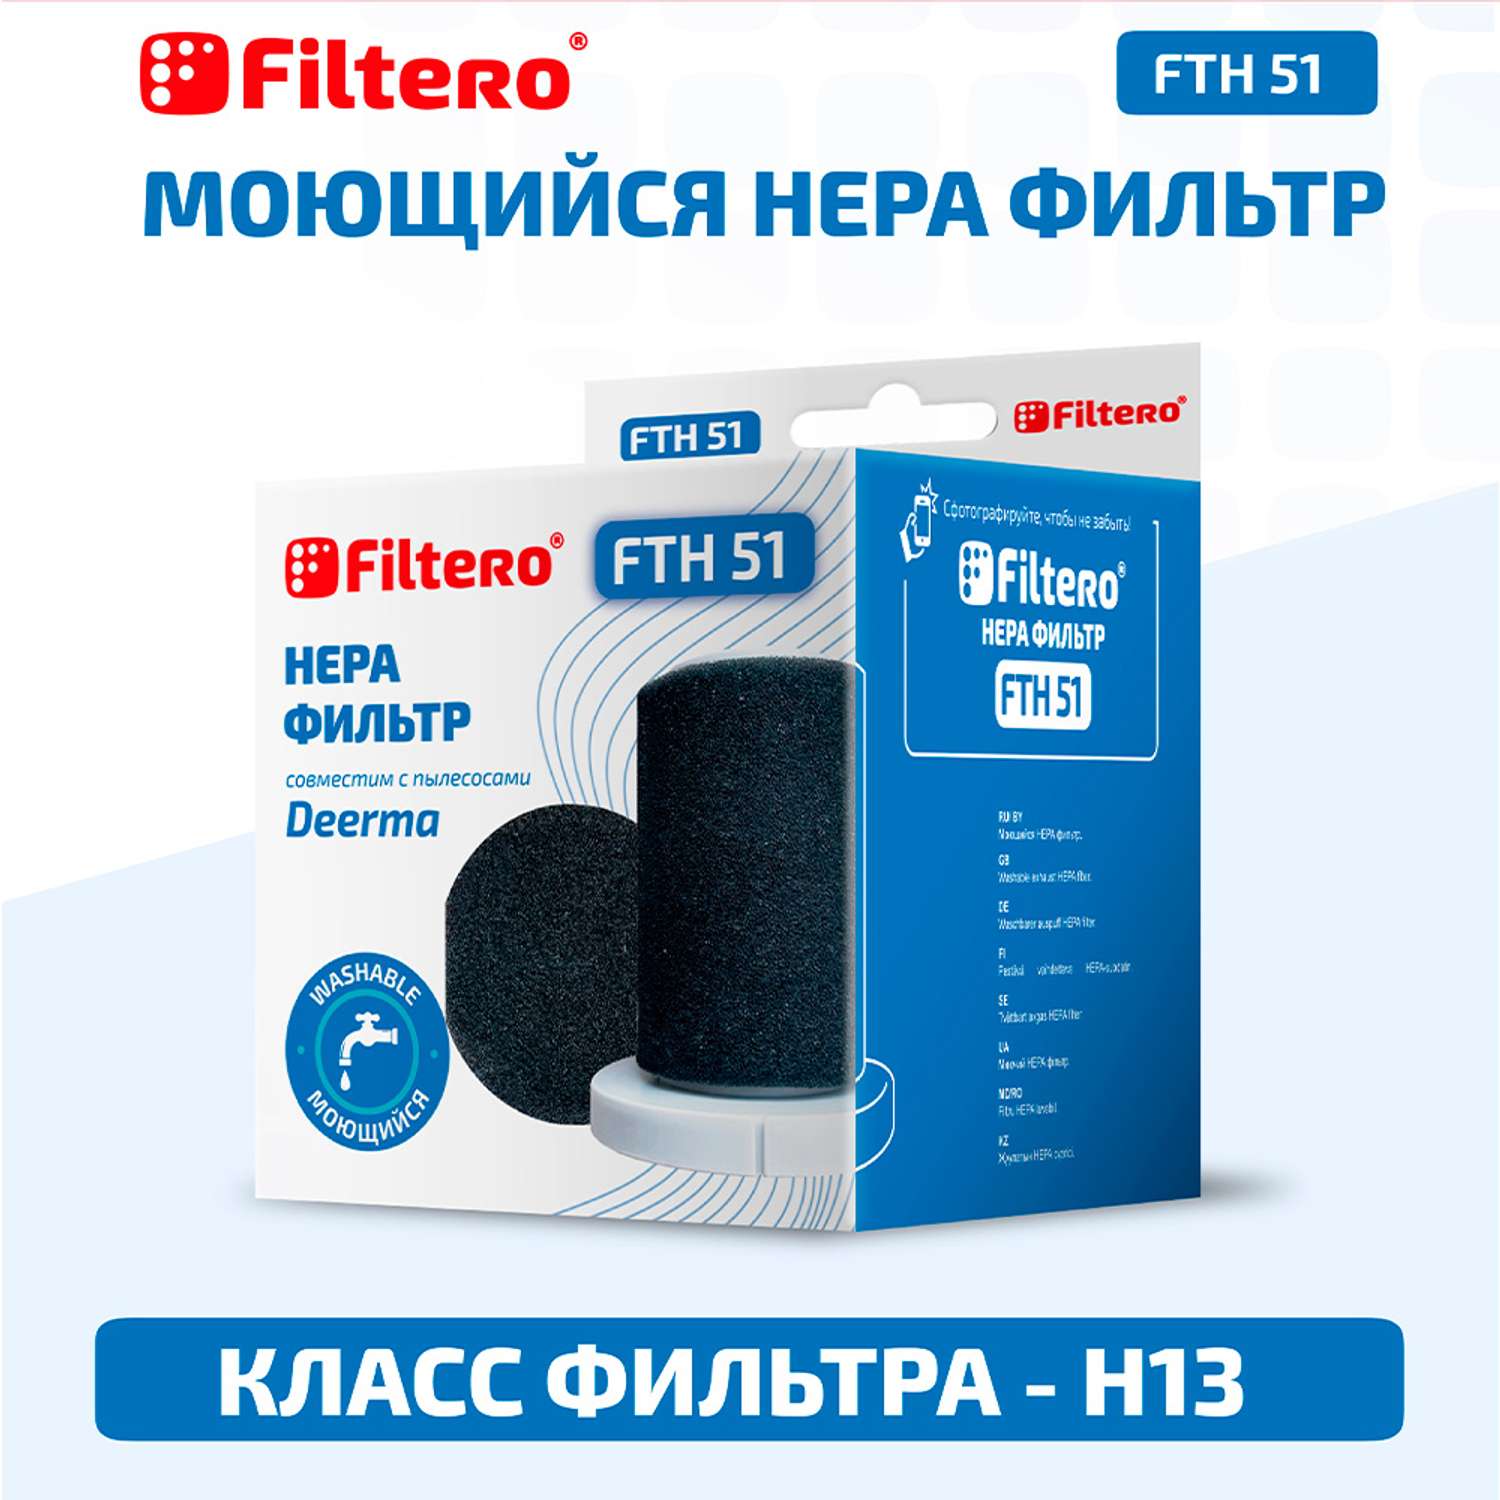  фильтров Filtero FTH 51 для вертикального пылесоса Xiaomi  .